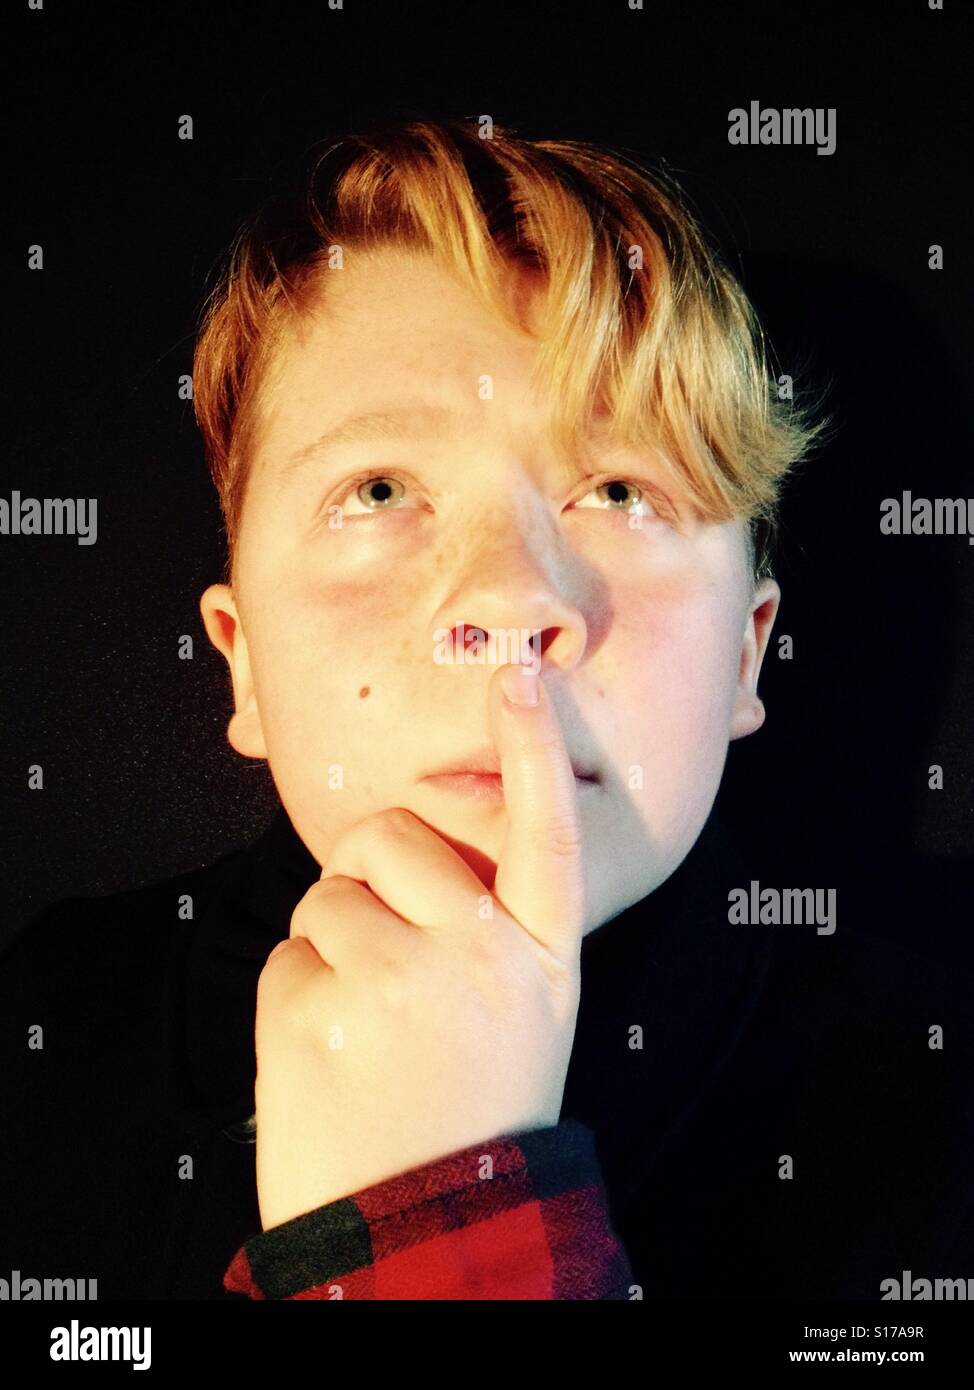 12-year old boy thinking Stock Photo